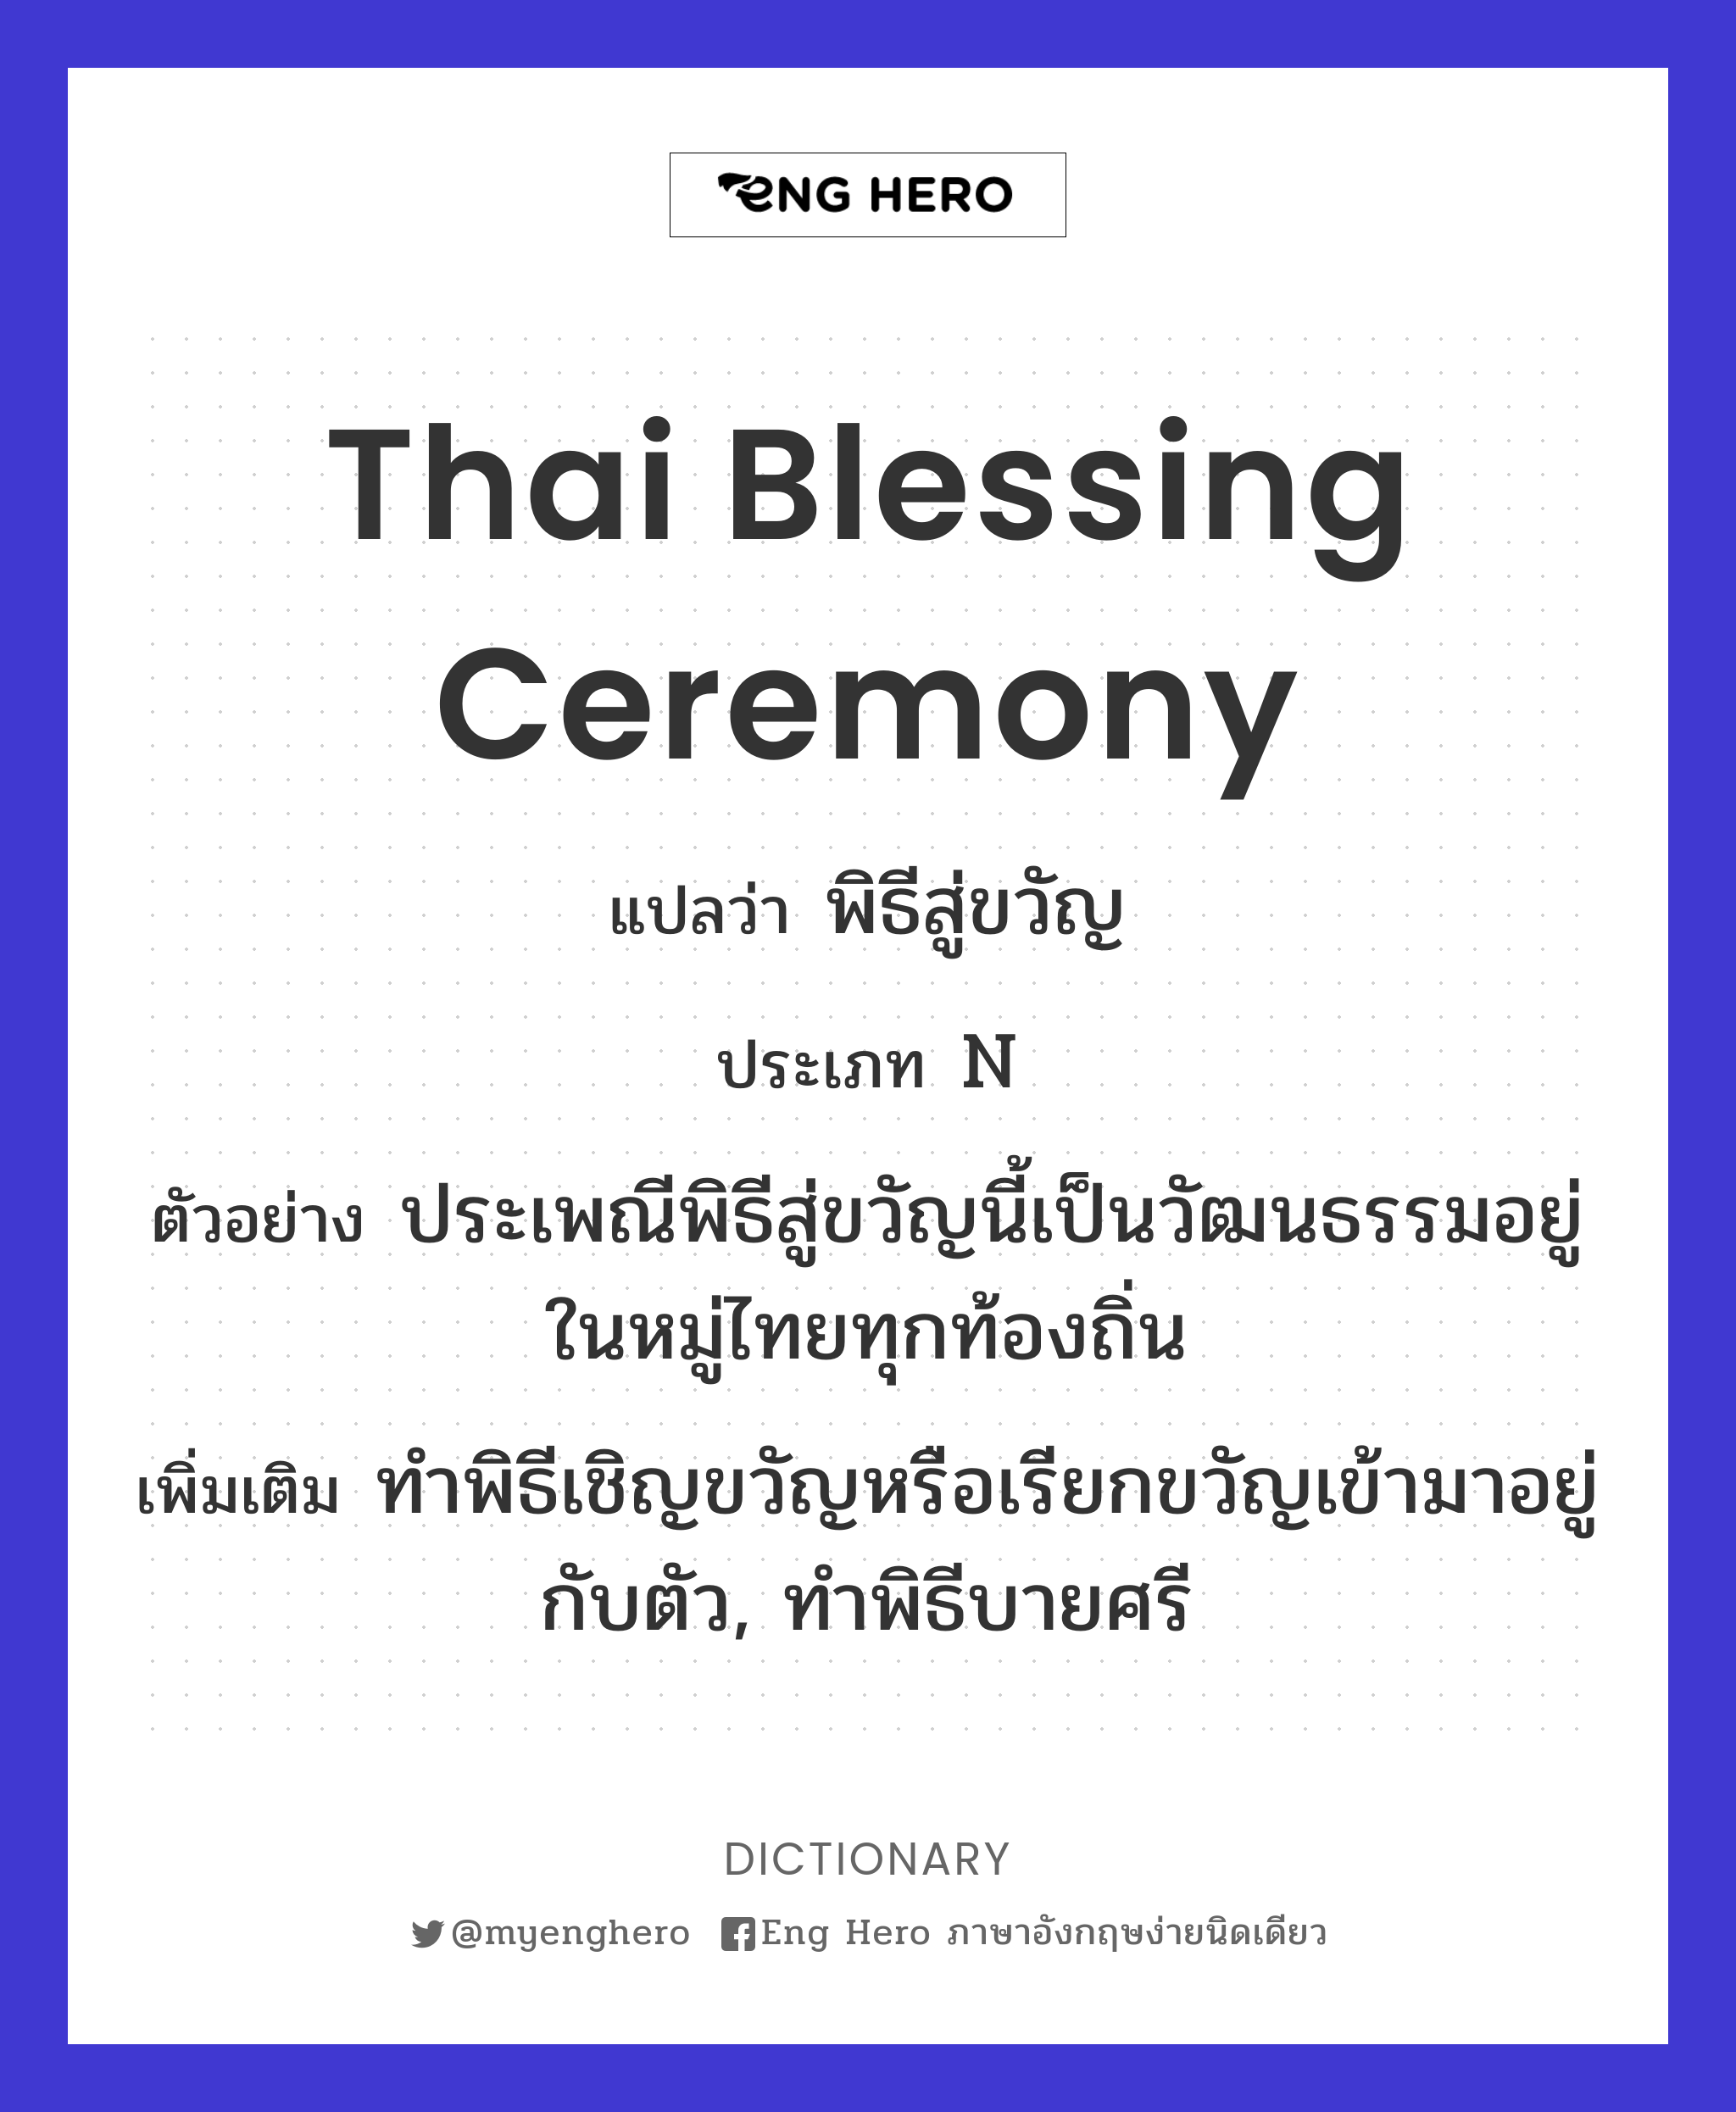 Thai blessing ceremony